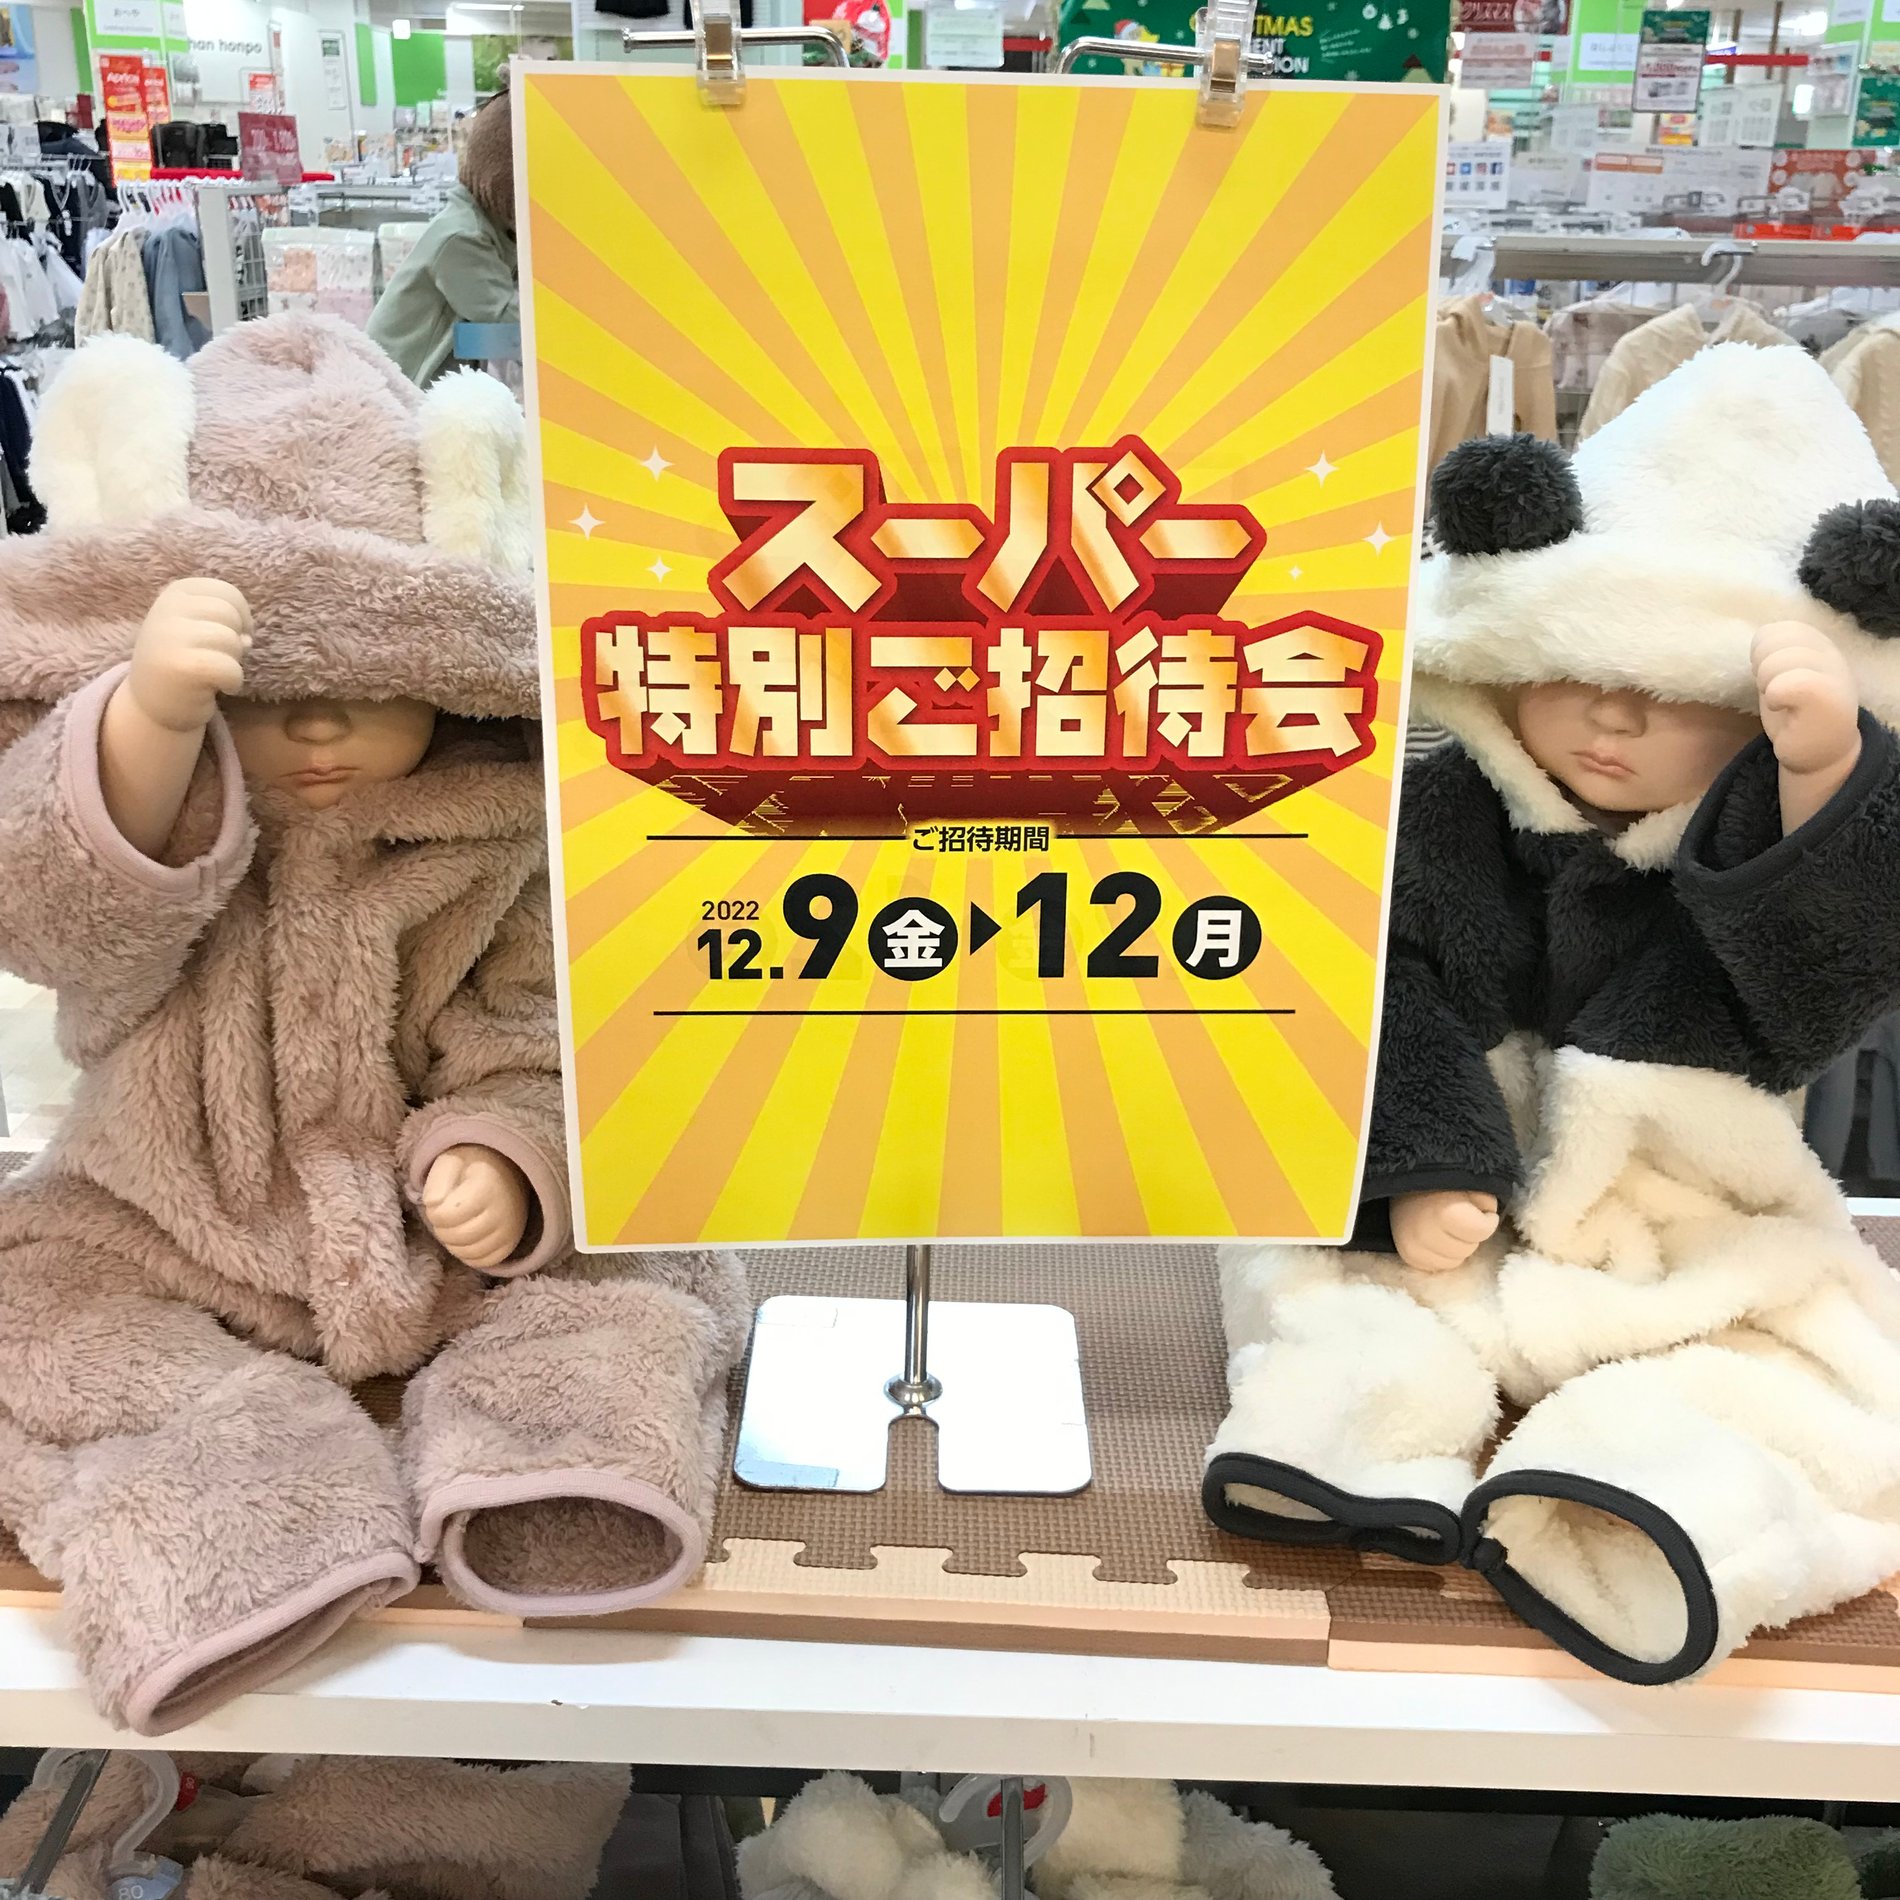 【ゆめタウン店舗限定】スーパー特別ご招待会！
12/9(金)～12/12(月)